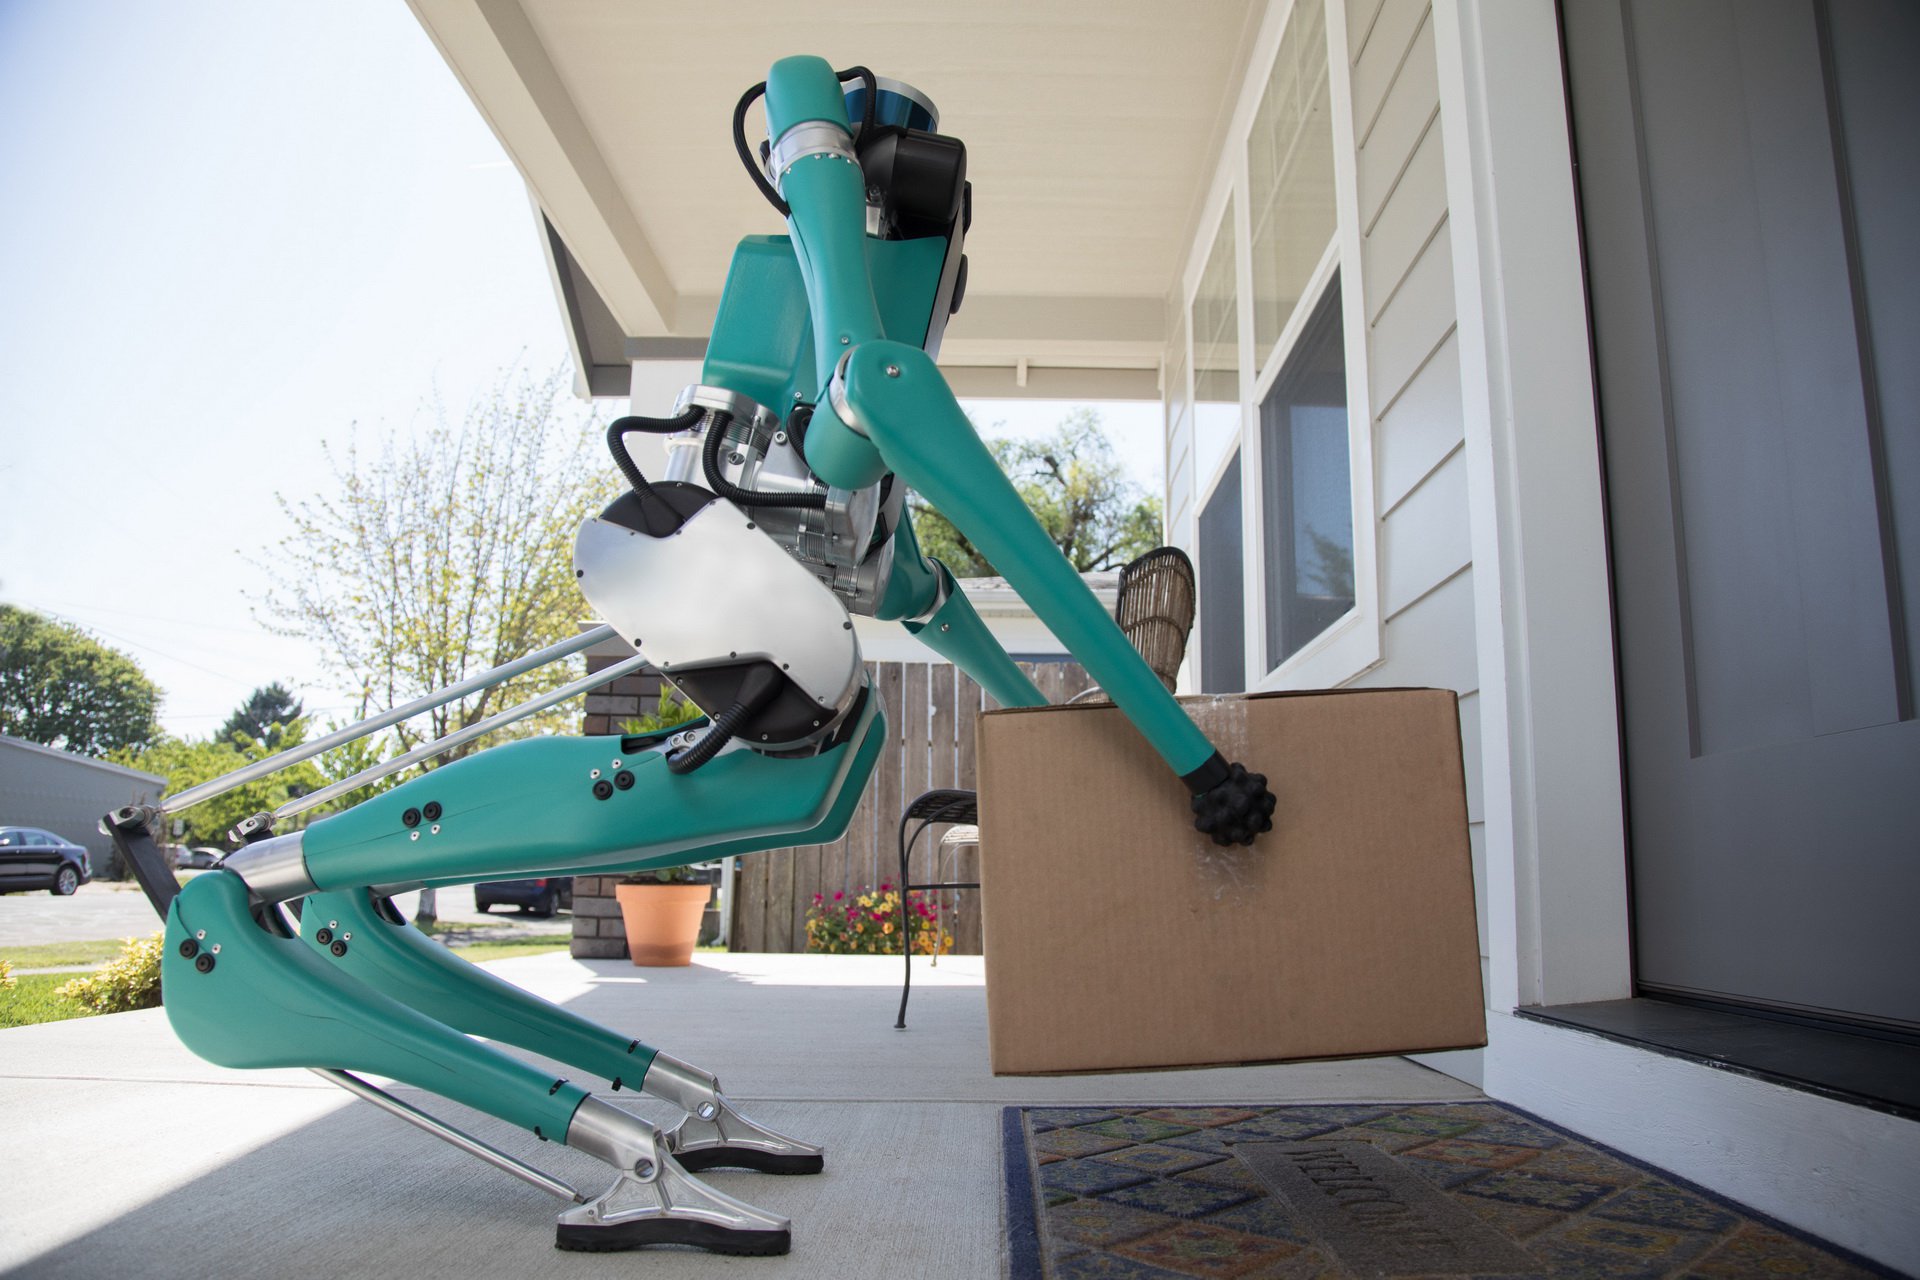 روبات دو پای فورد برای حمل و نقل پستی